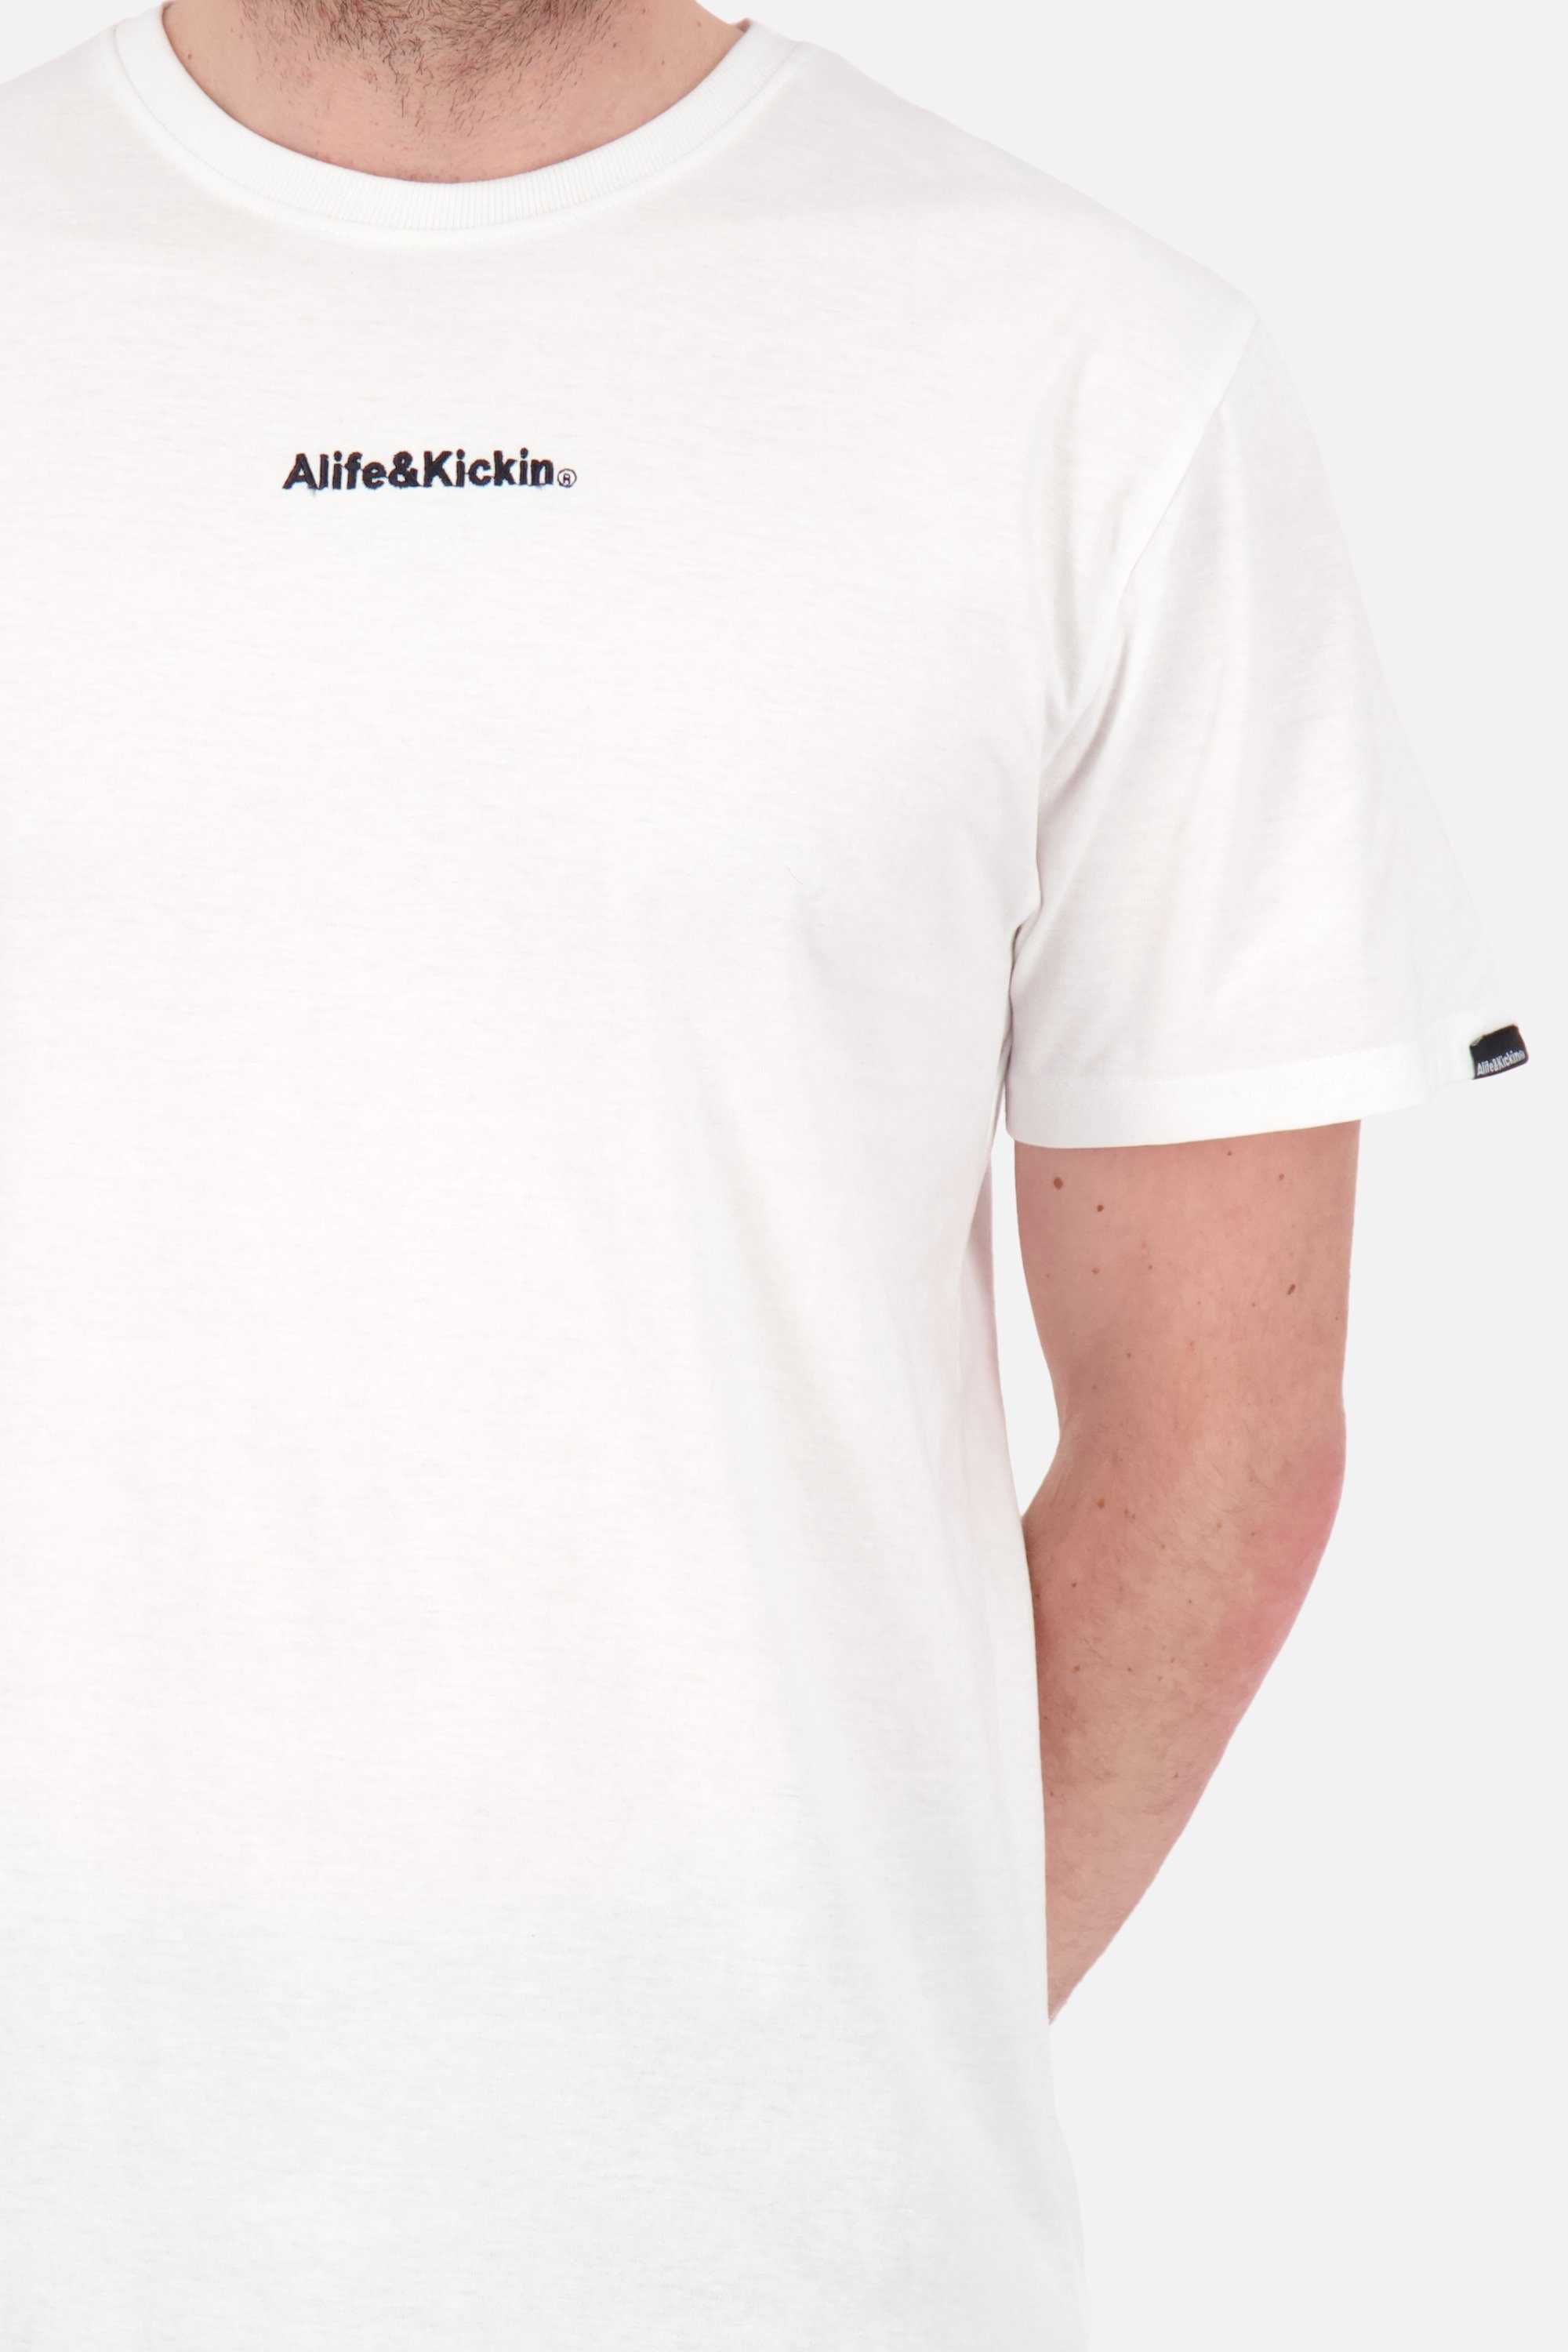 Alife & Kickin Shirt Kurzarmshirt, E Shirt AlfieAK Rundhalsshirt white Herren